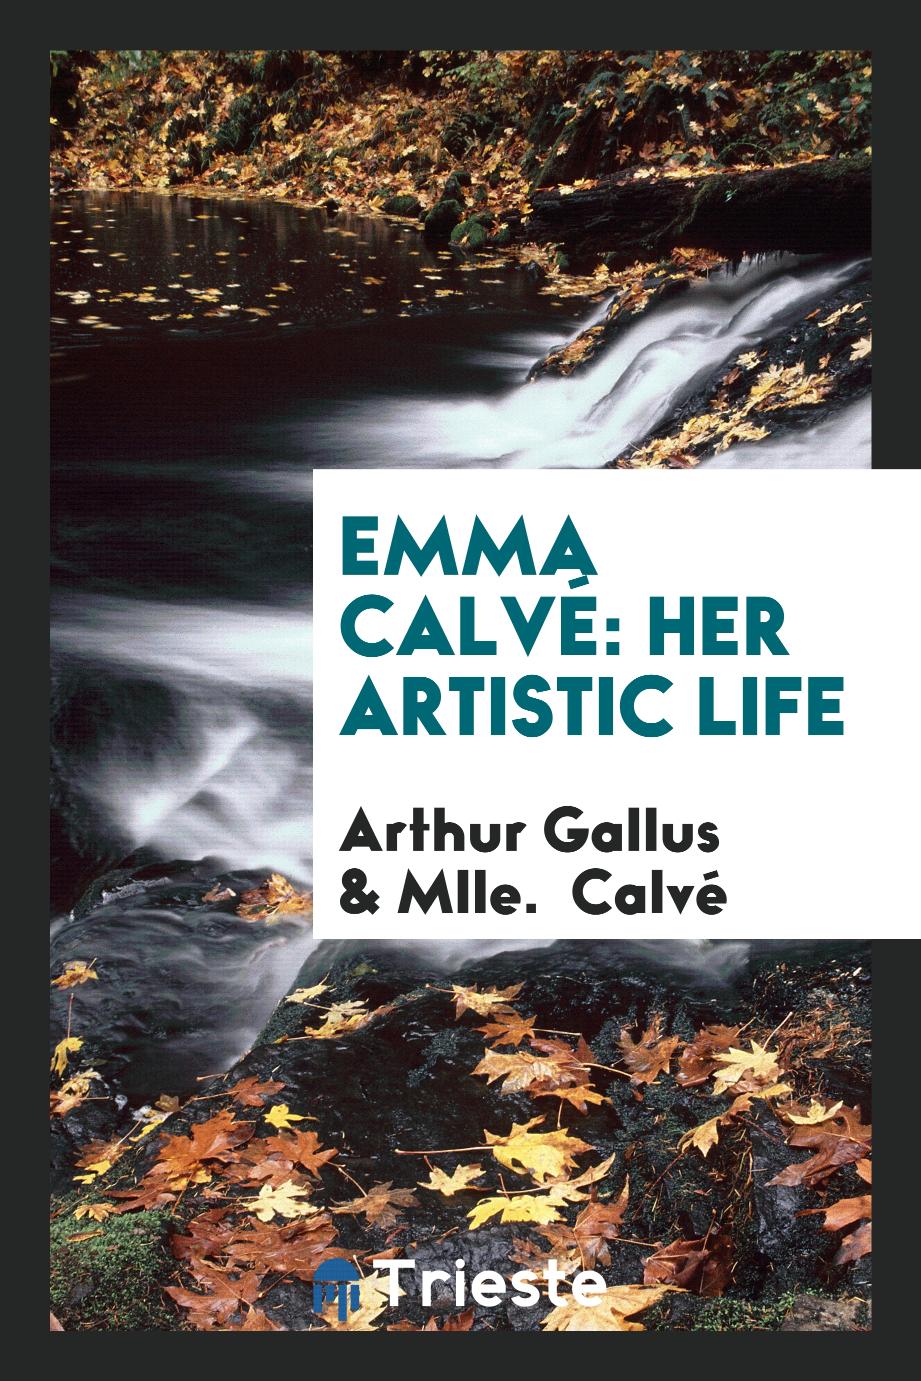 Emma Calvé: her artistic life